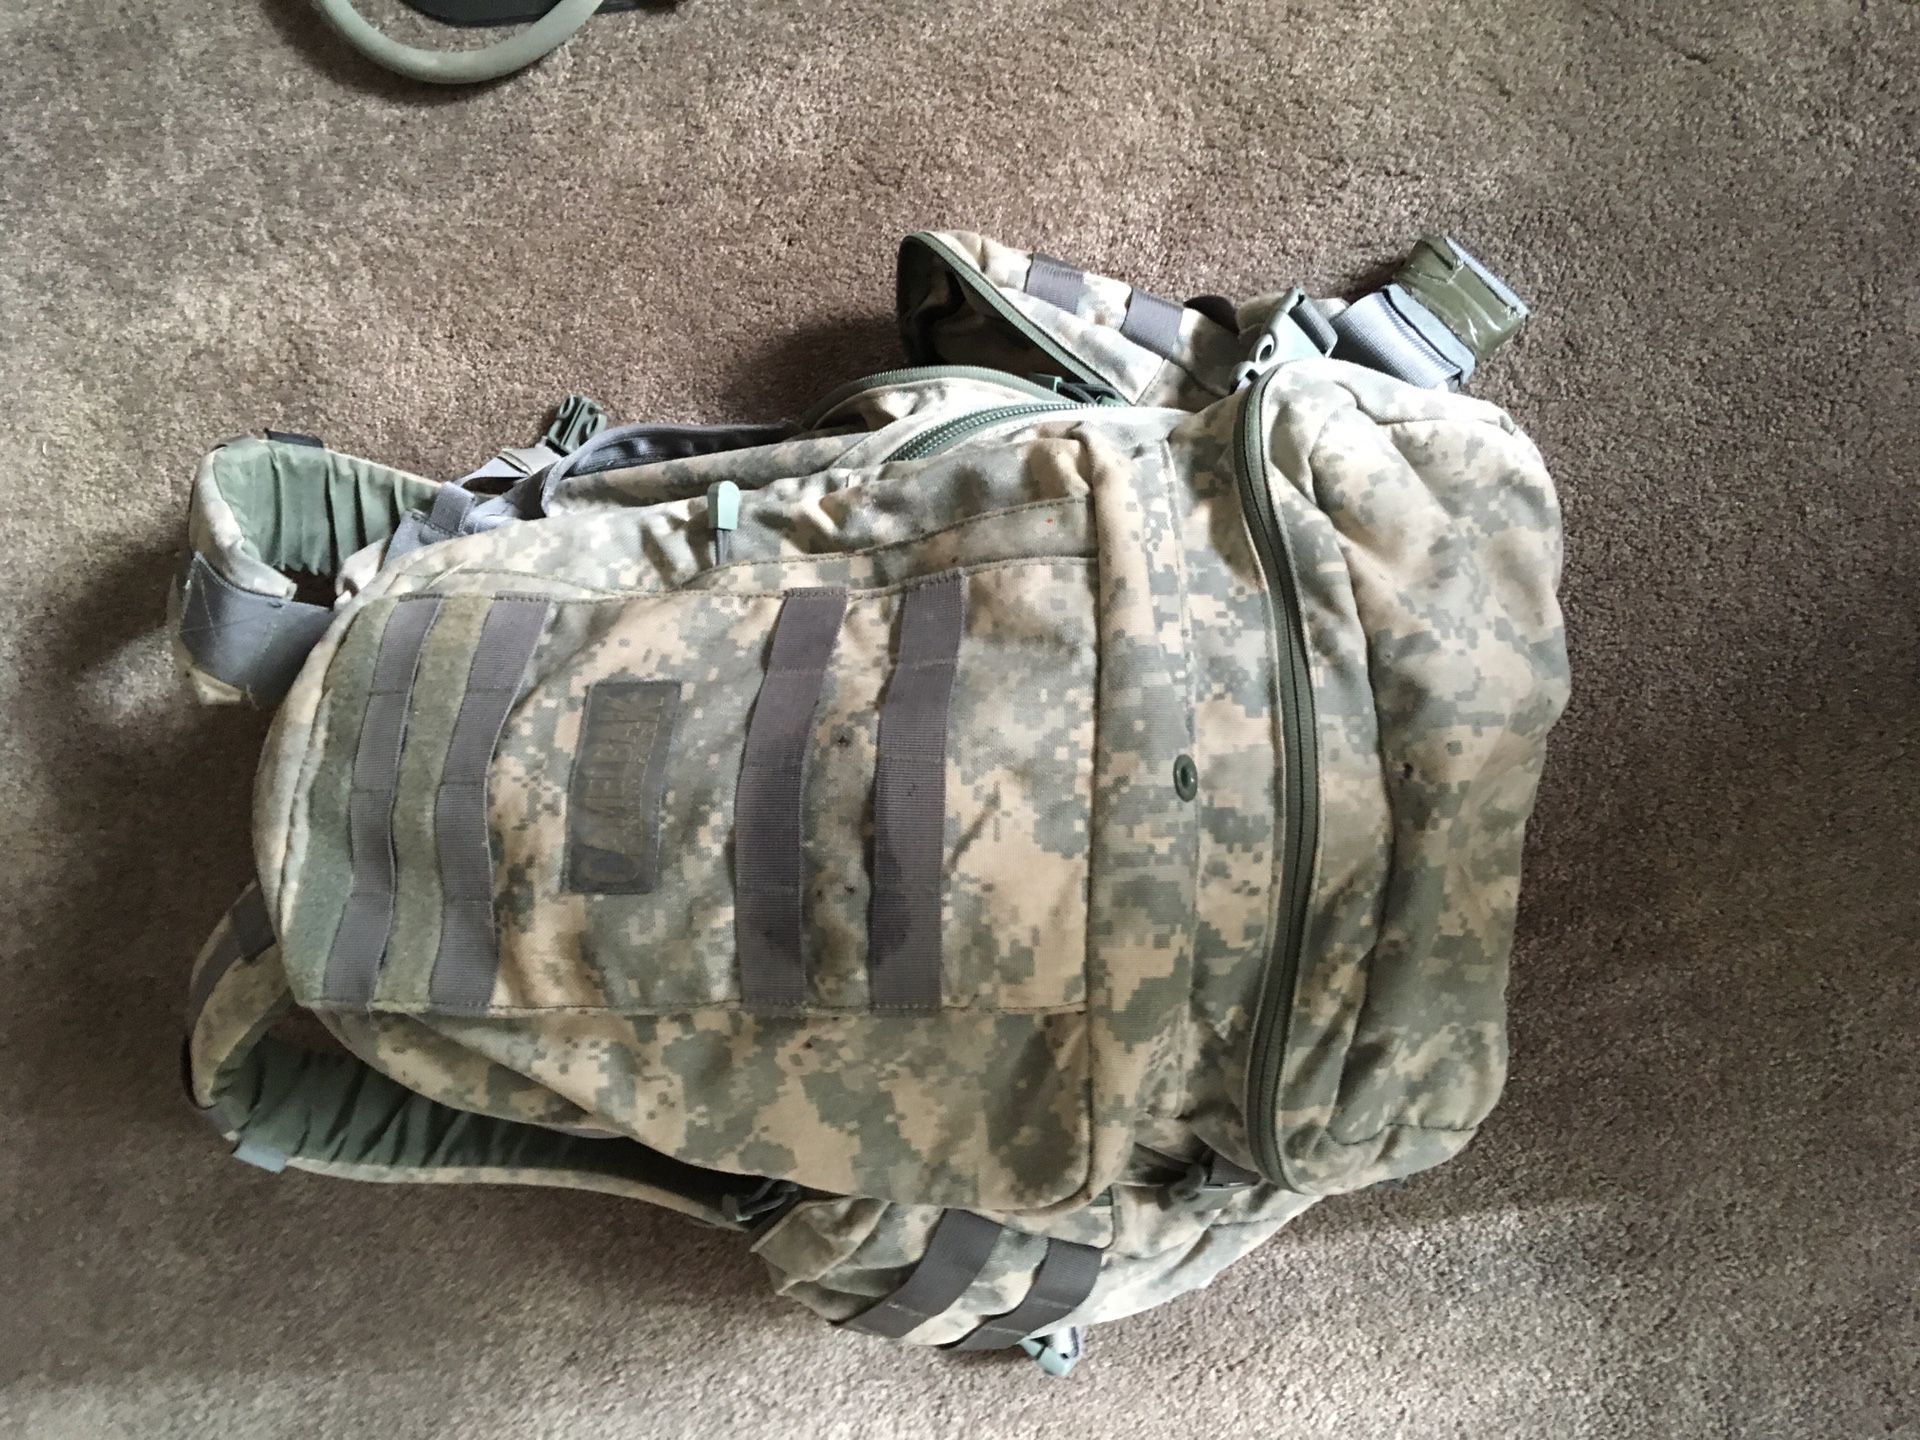 Camelbak Maximum Gear backpack